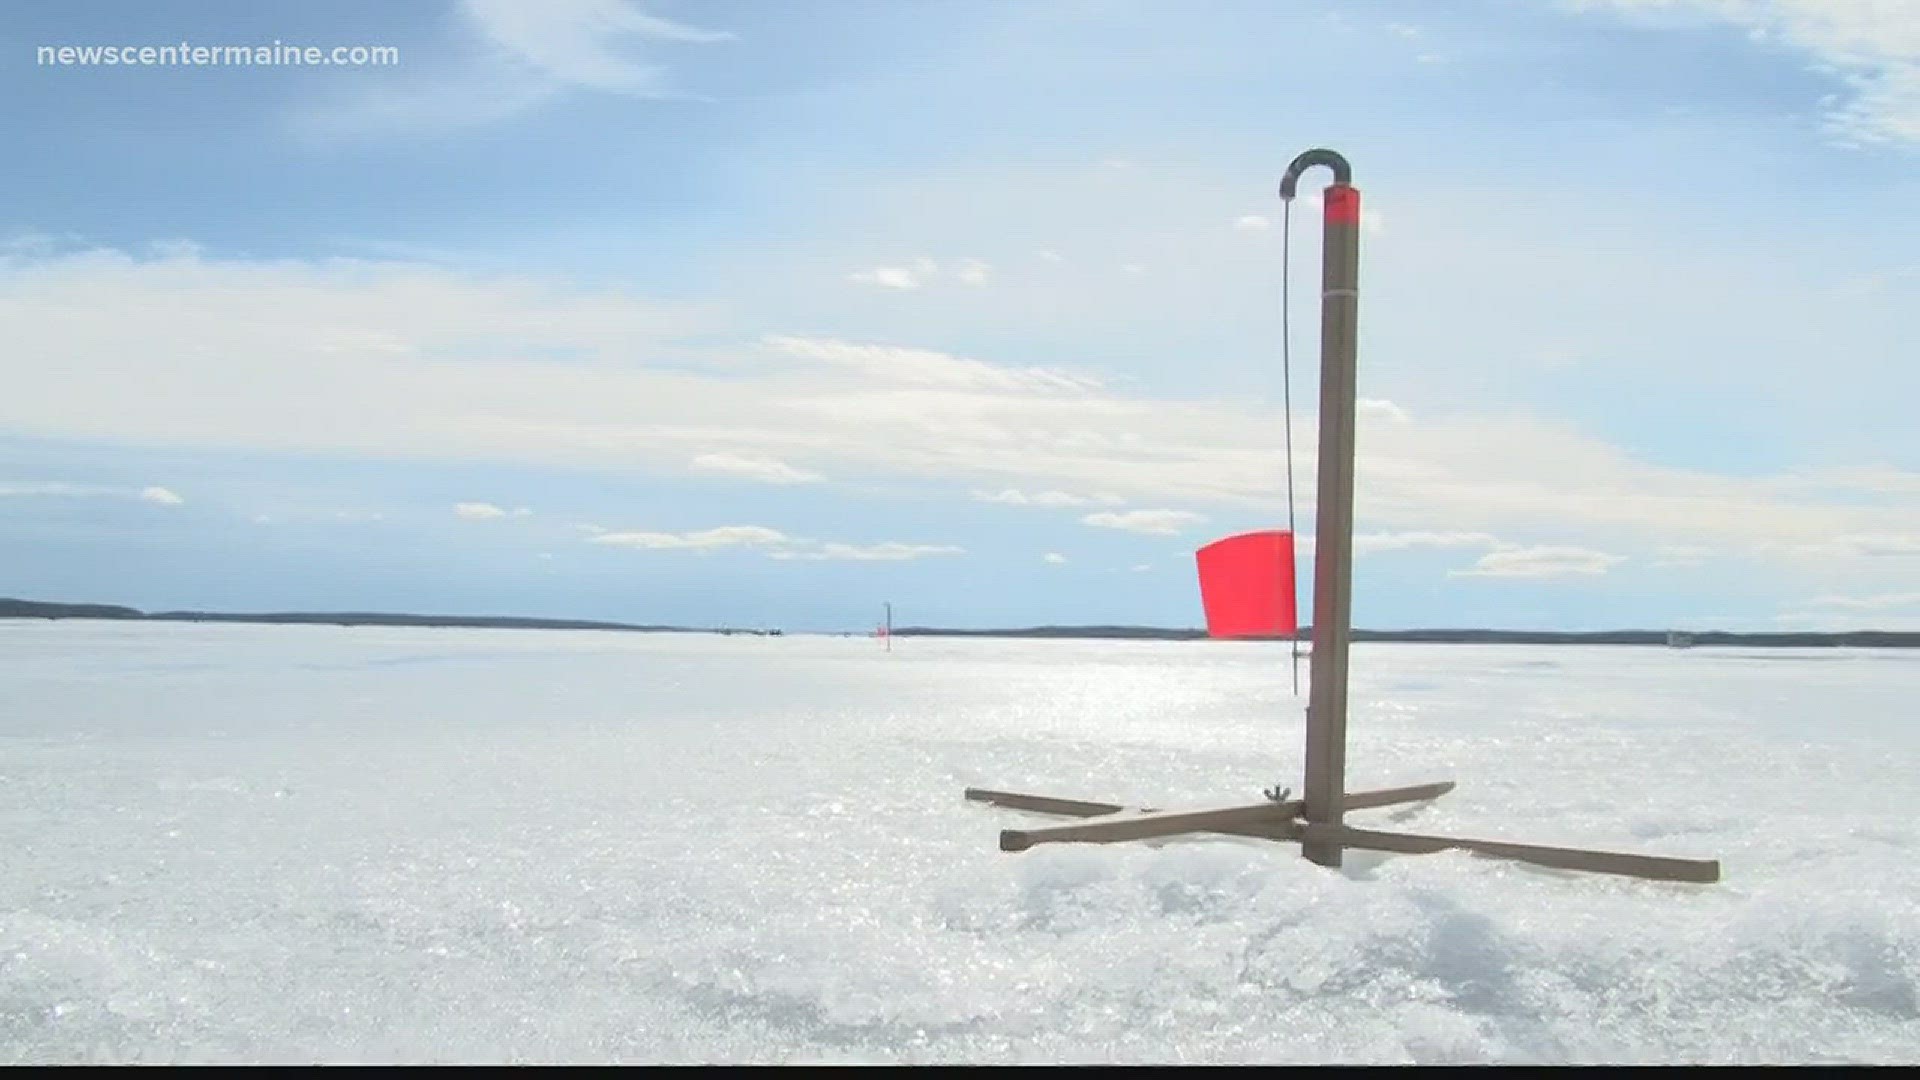 Weather at Sebago Lake Ice Fishing Derby